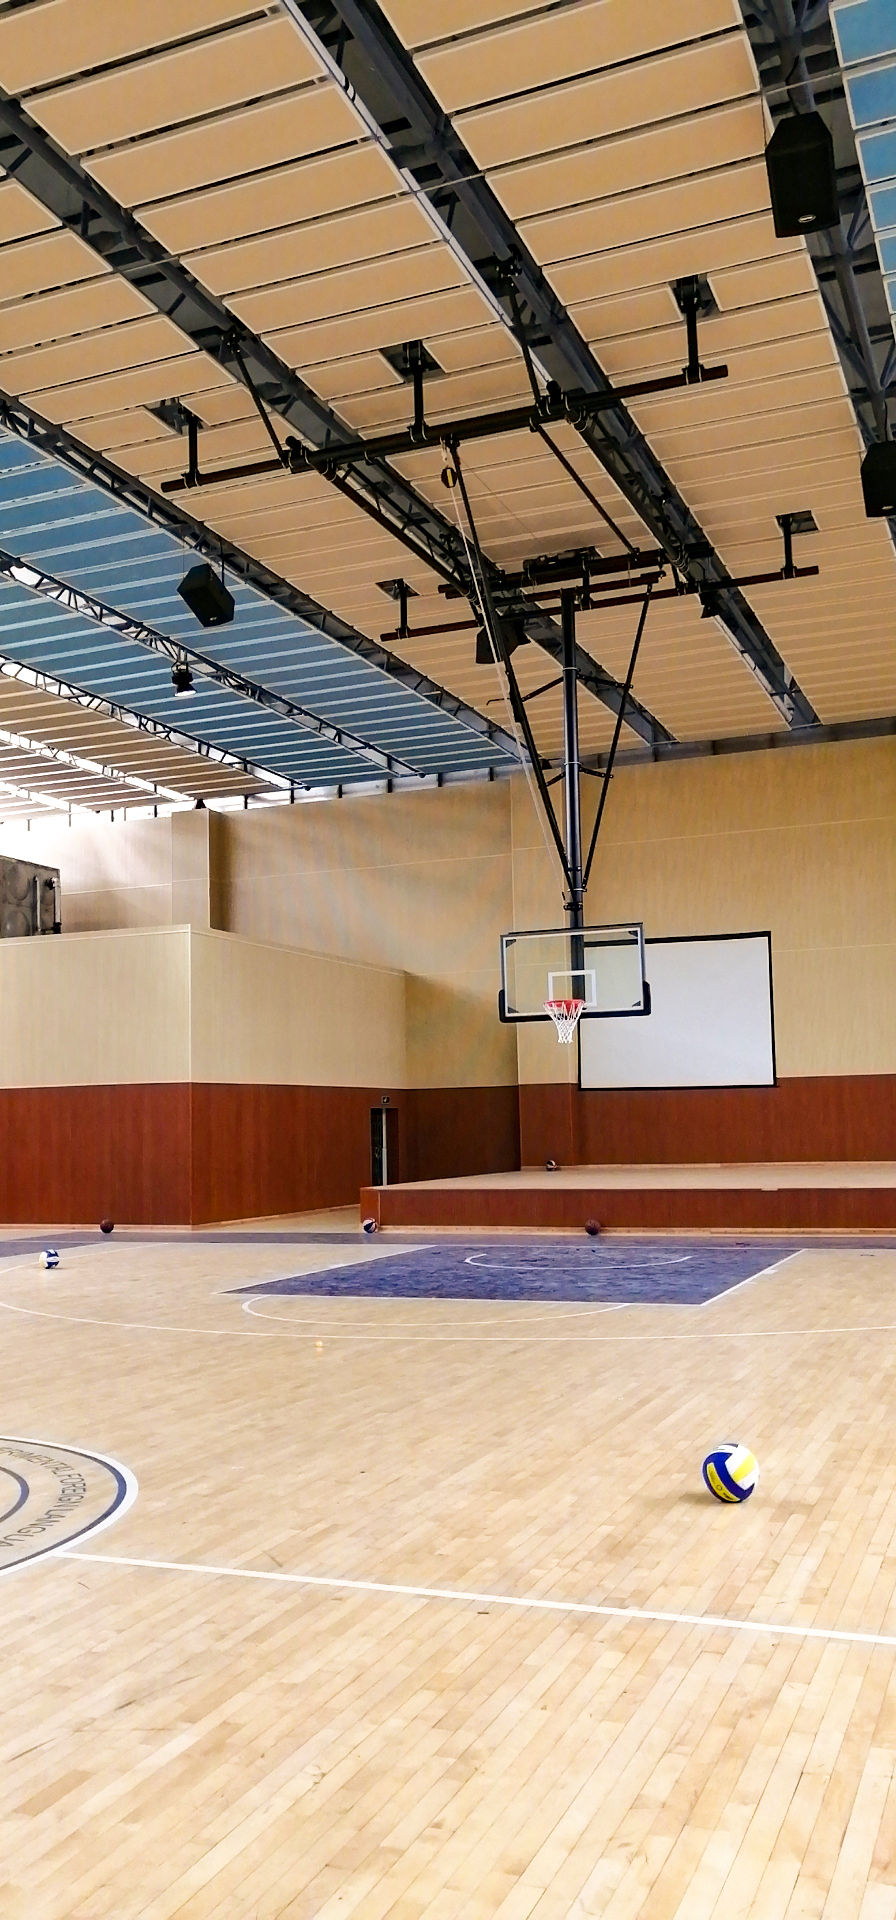 四川省成都市实验外国语学校附属小学体育馆电动悬空篮球架k3107